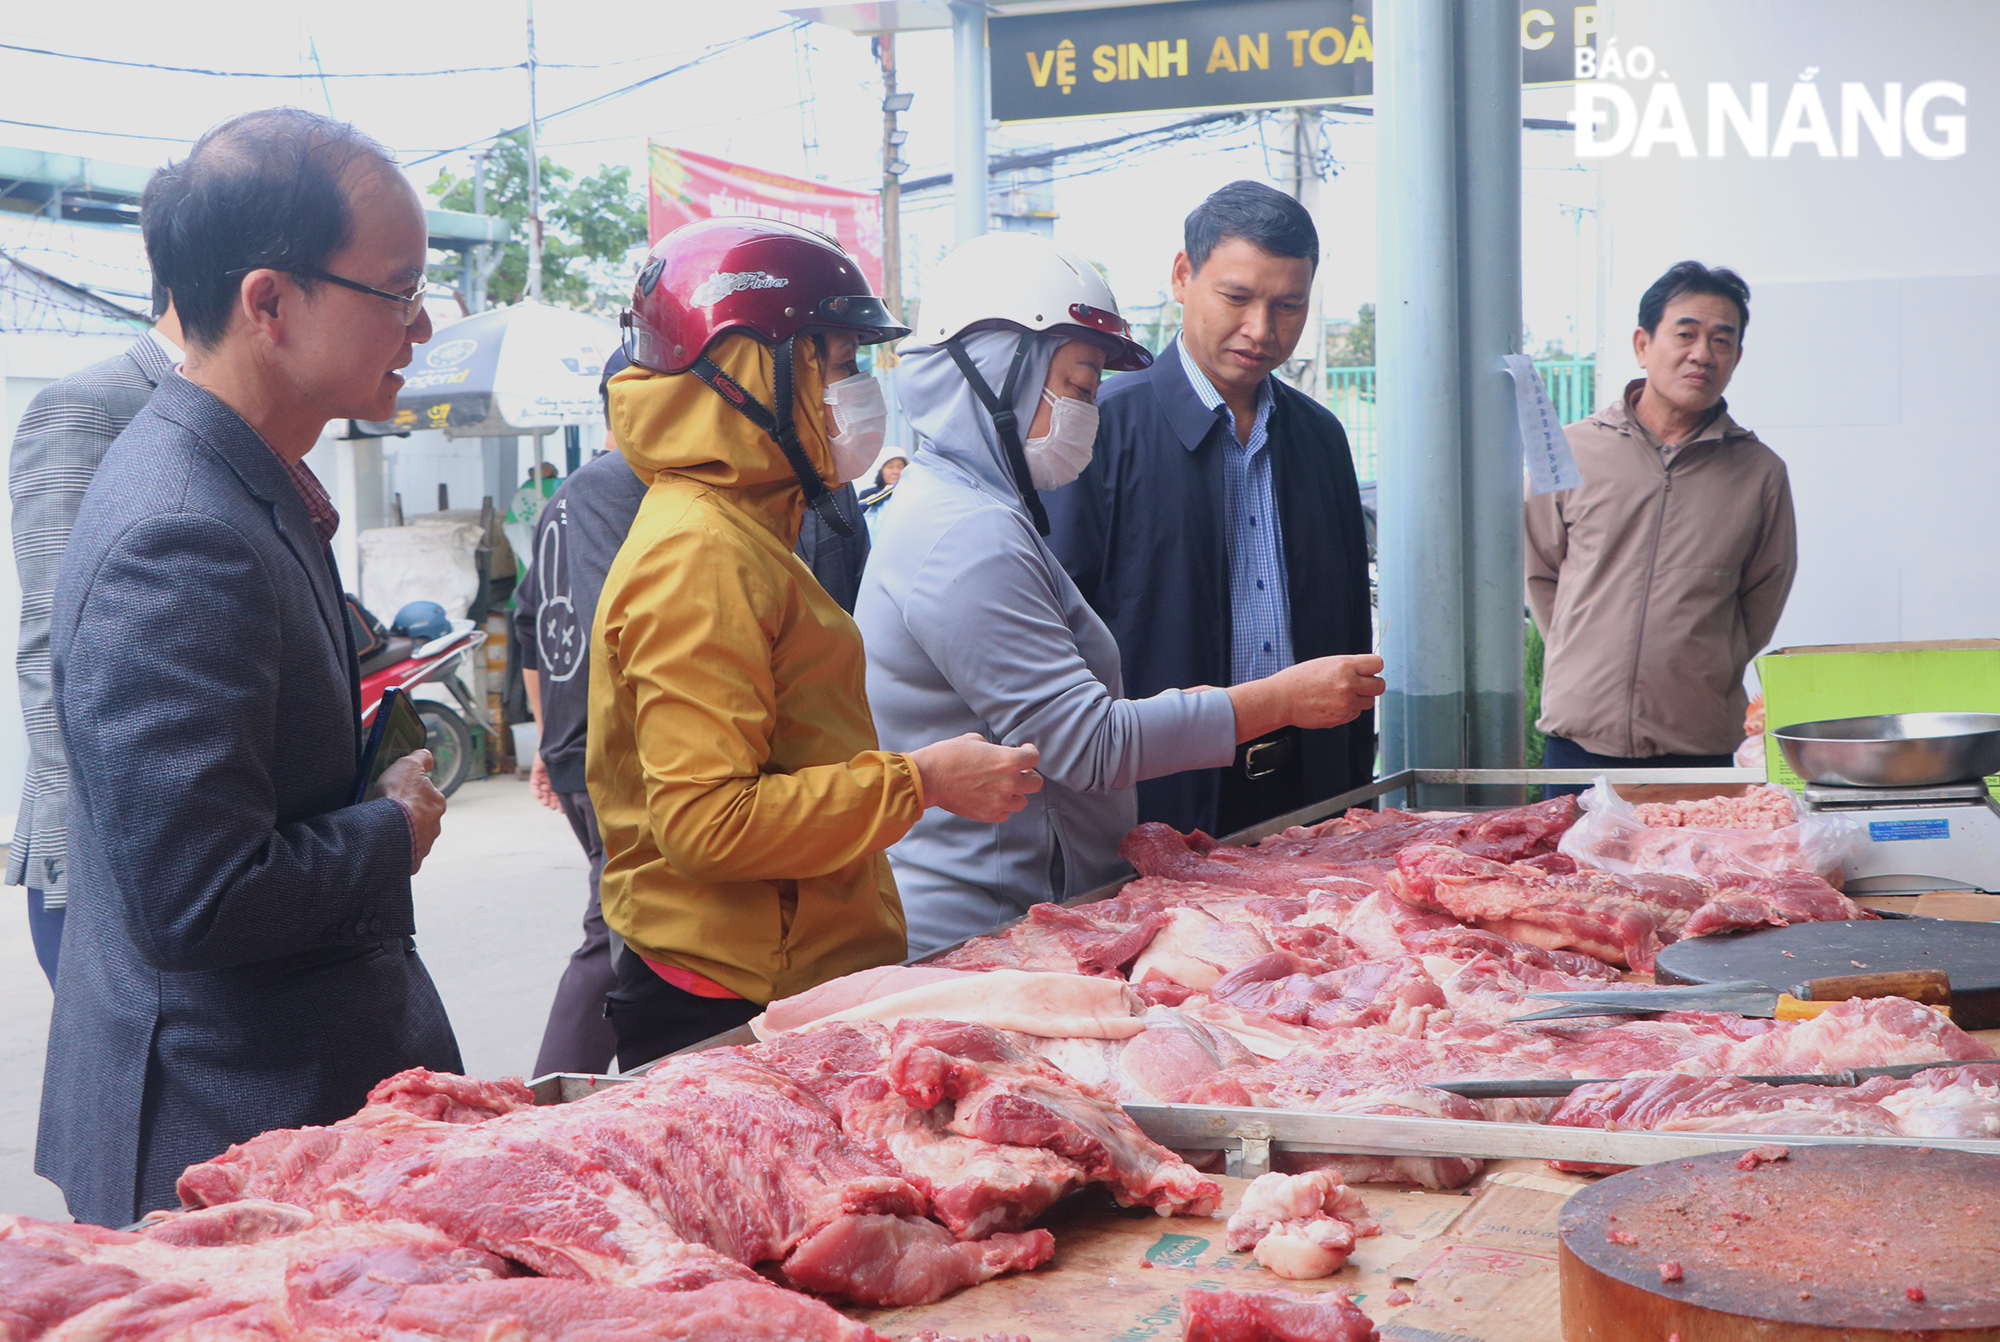 Phó Chủ tịch Thường trực UBND thành phố Hồ Kỳ Minh (thứ 2, bên phải) kiểm tra tại điểm bán thịt heo bình ổn giá ở 407 Trưng Nữ Vương trong sáng 20-1. Ảnh: VĂN HOÀNG